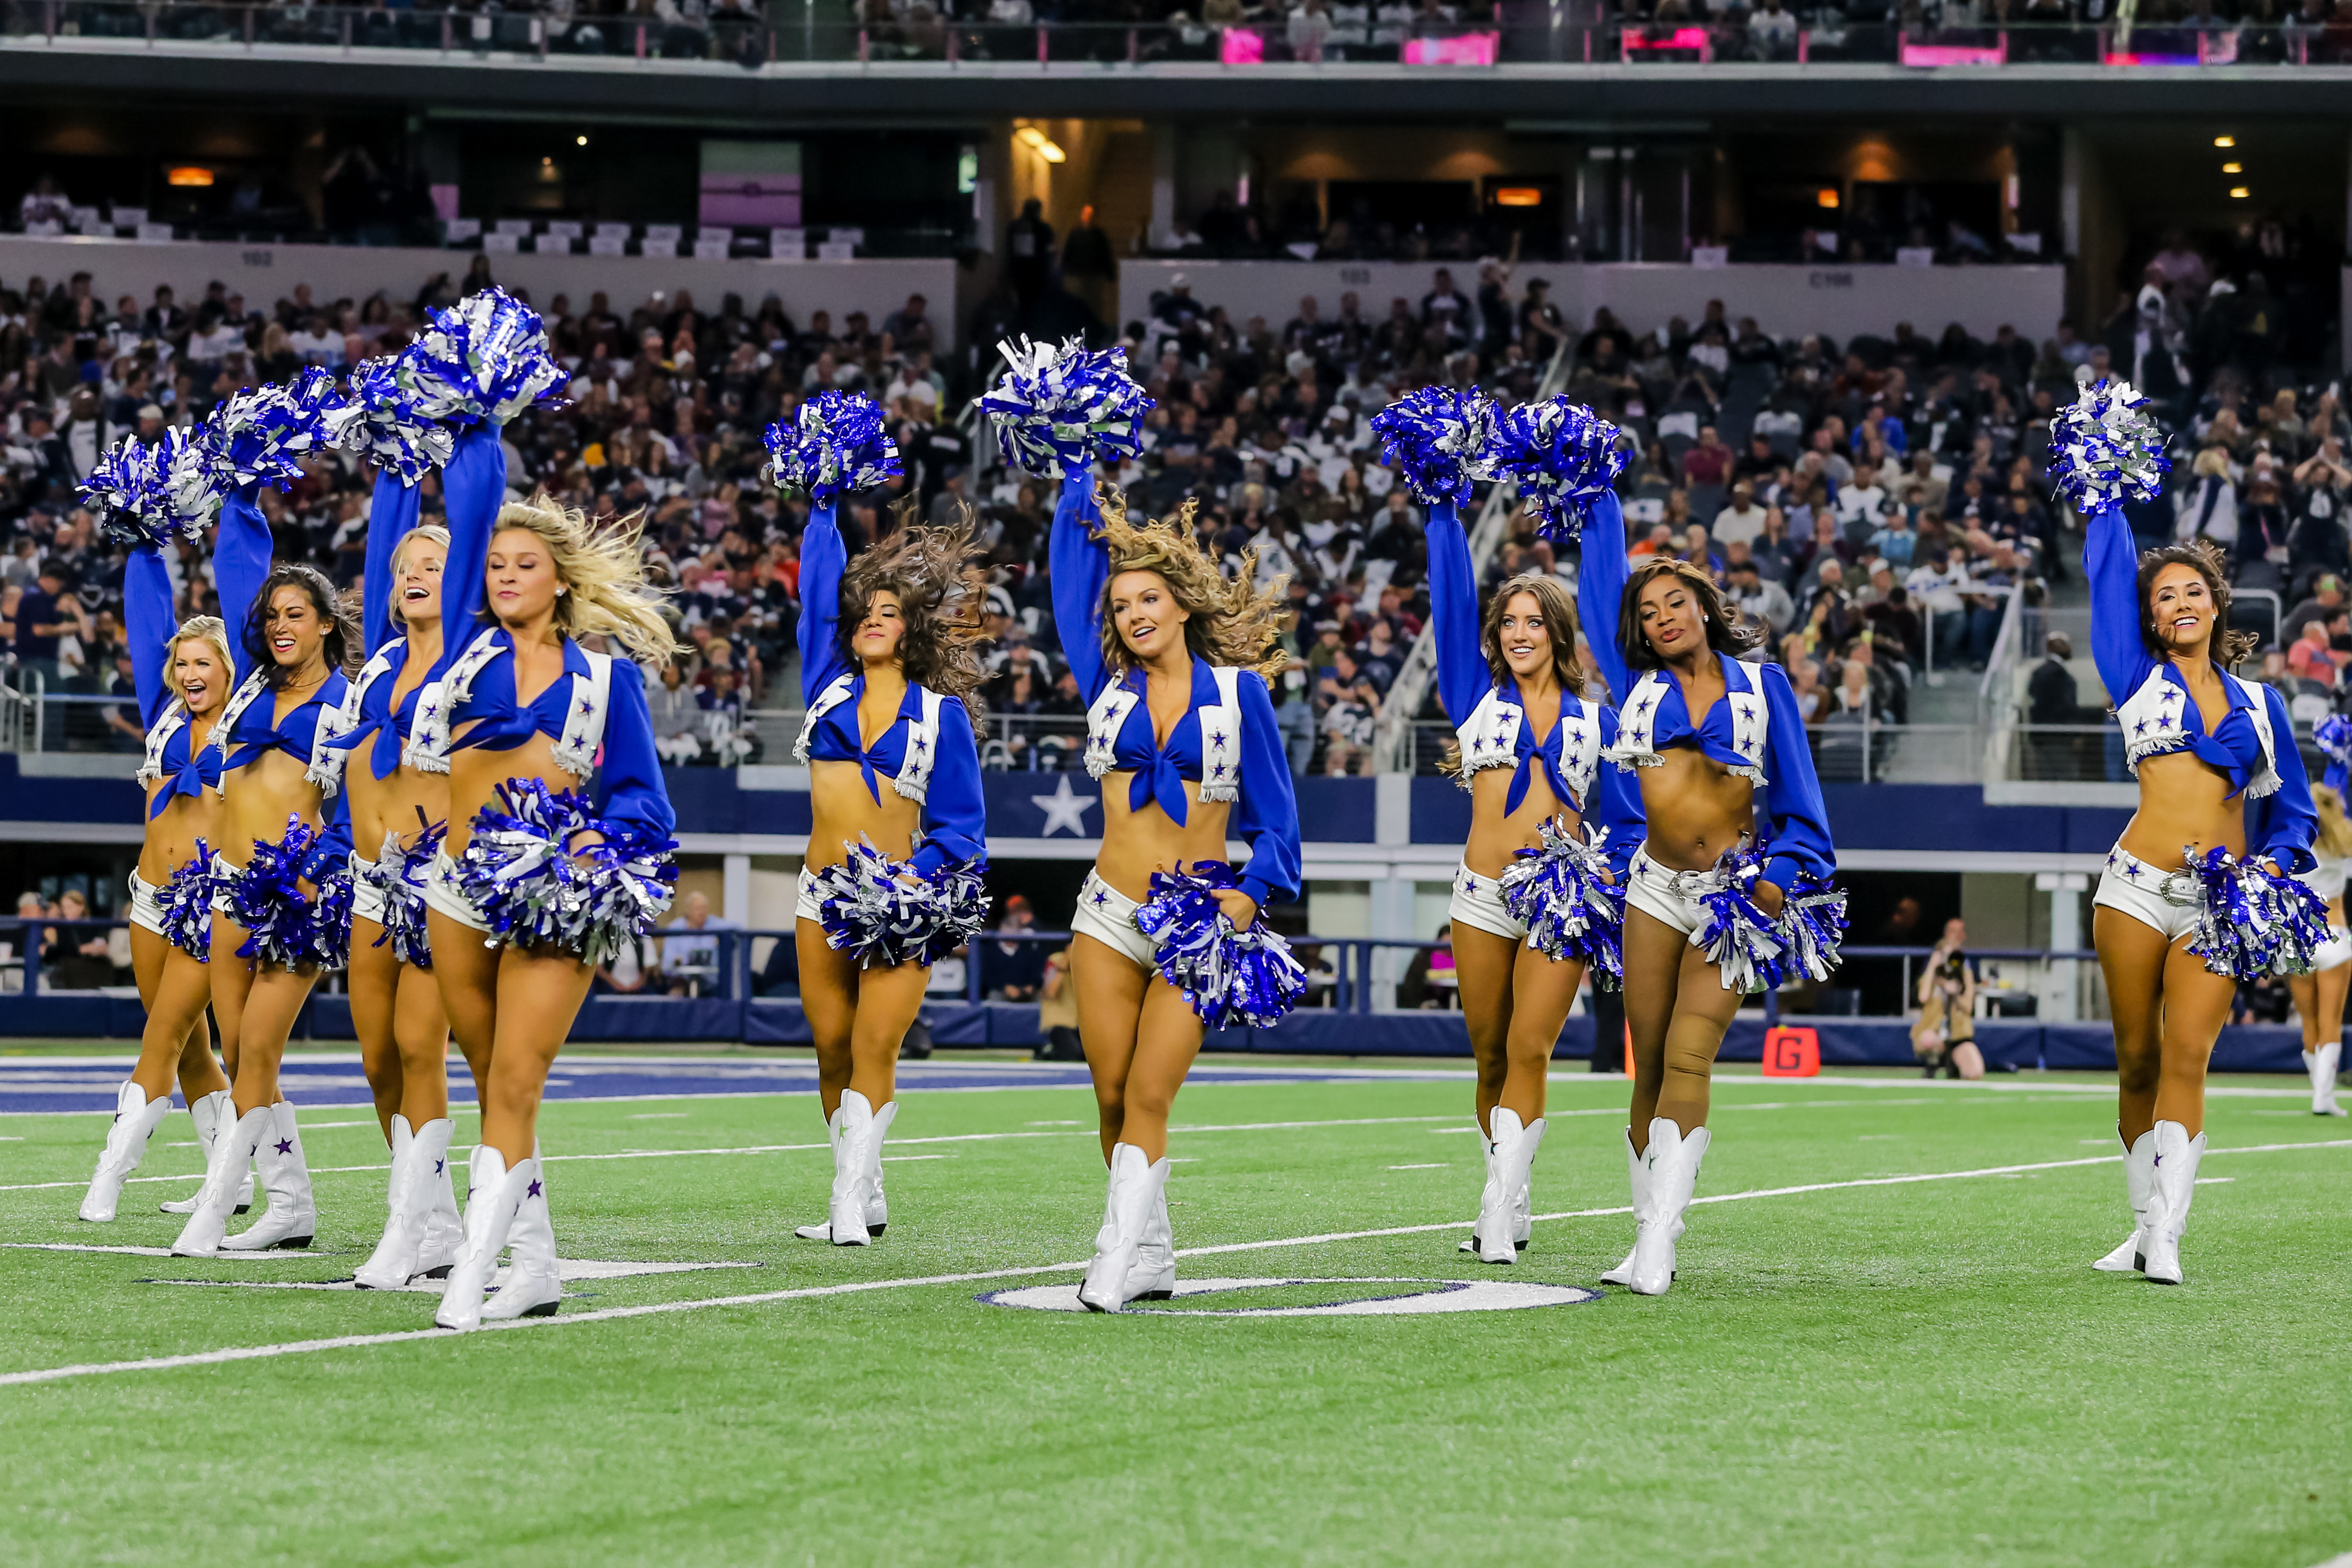 Dallas Cowboys Cheerleaders Porn - Confessions of the Dallas Cowboys Cheerleaders - InsideHook